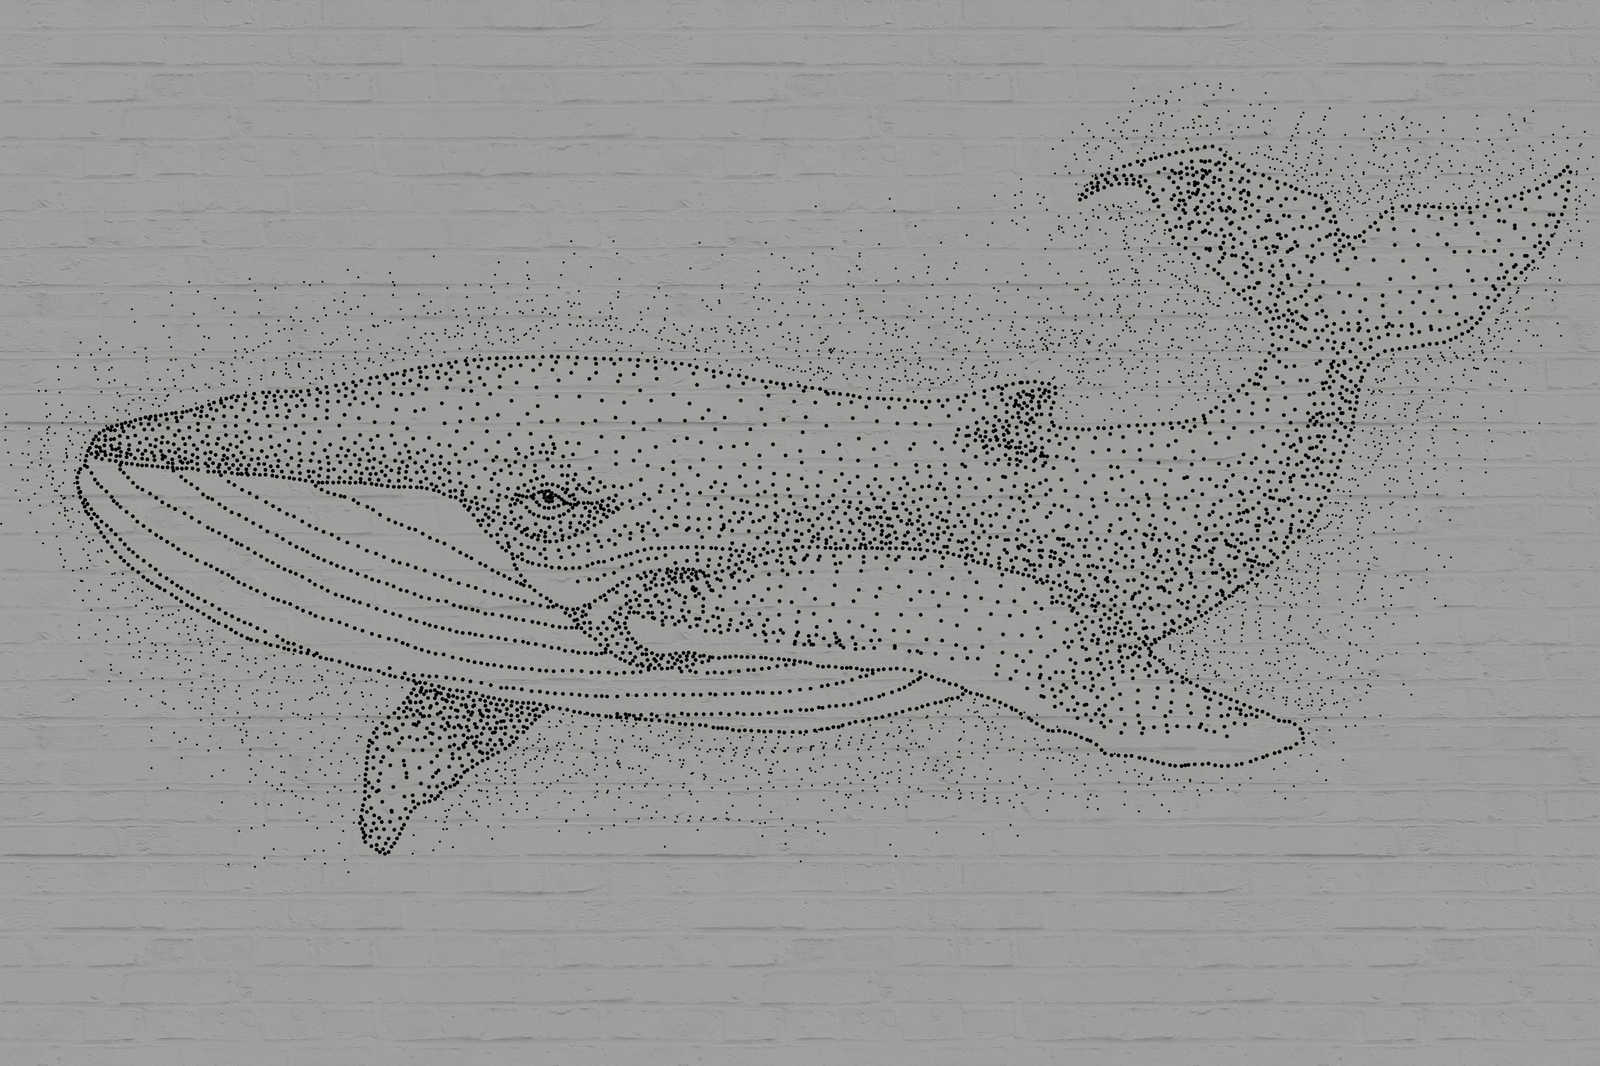             Quadro su tela Balena in stile disegno su parete in pietra 3D - 0,90 m x 0,60 m
        